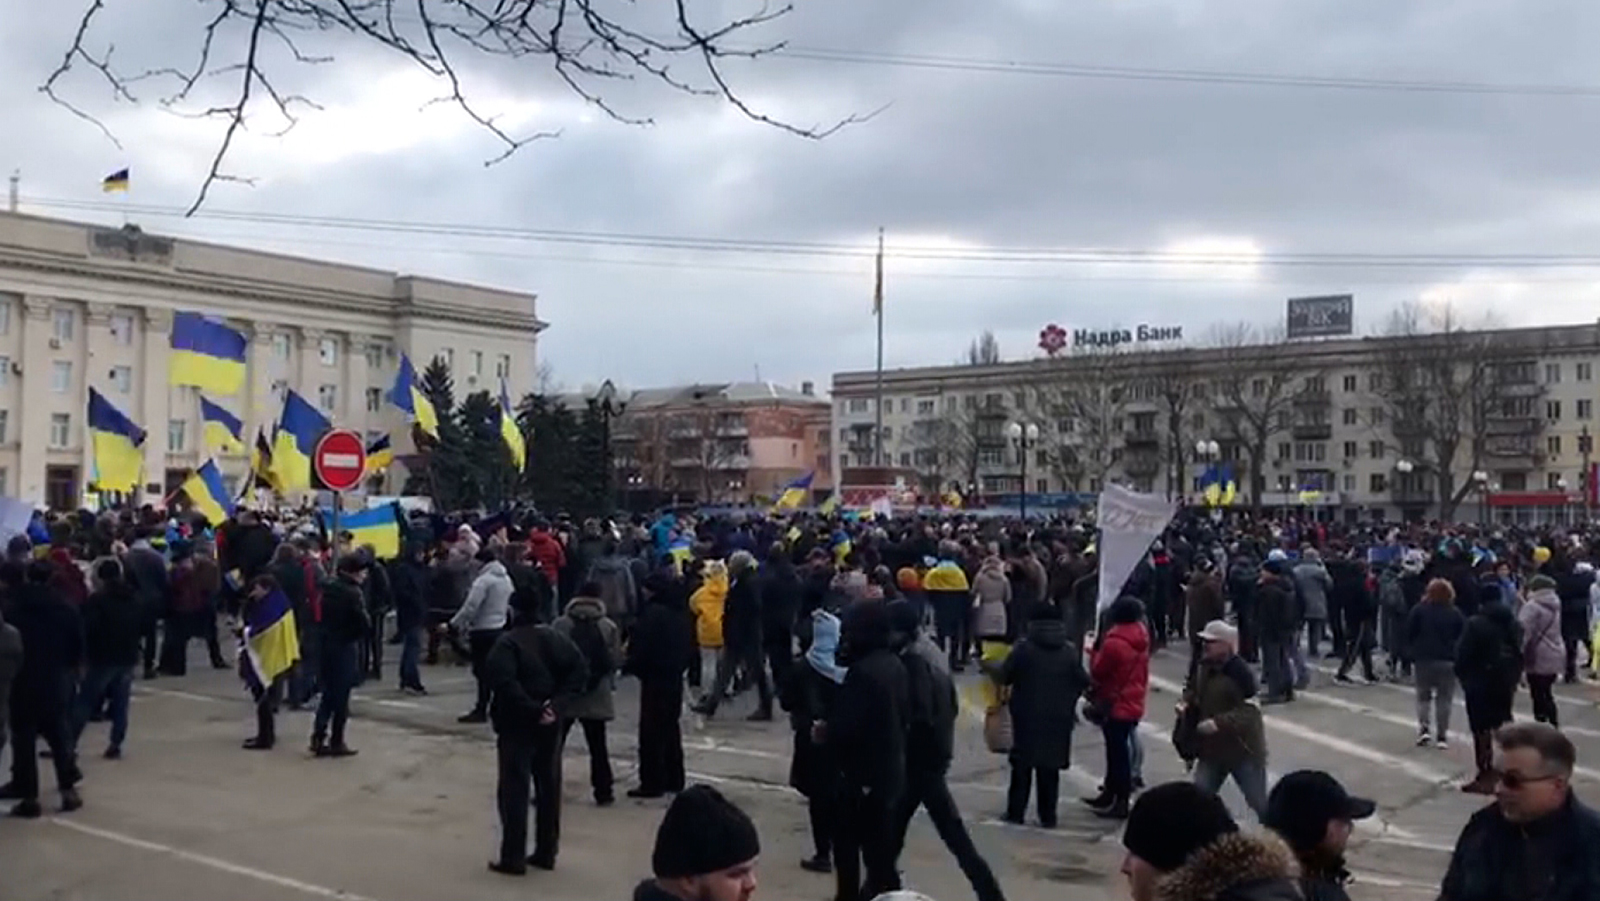 Growing defiance on display in Russian-held Ukraine